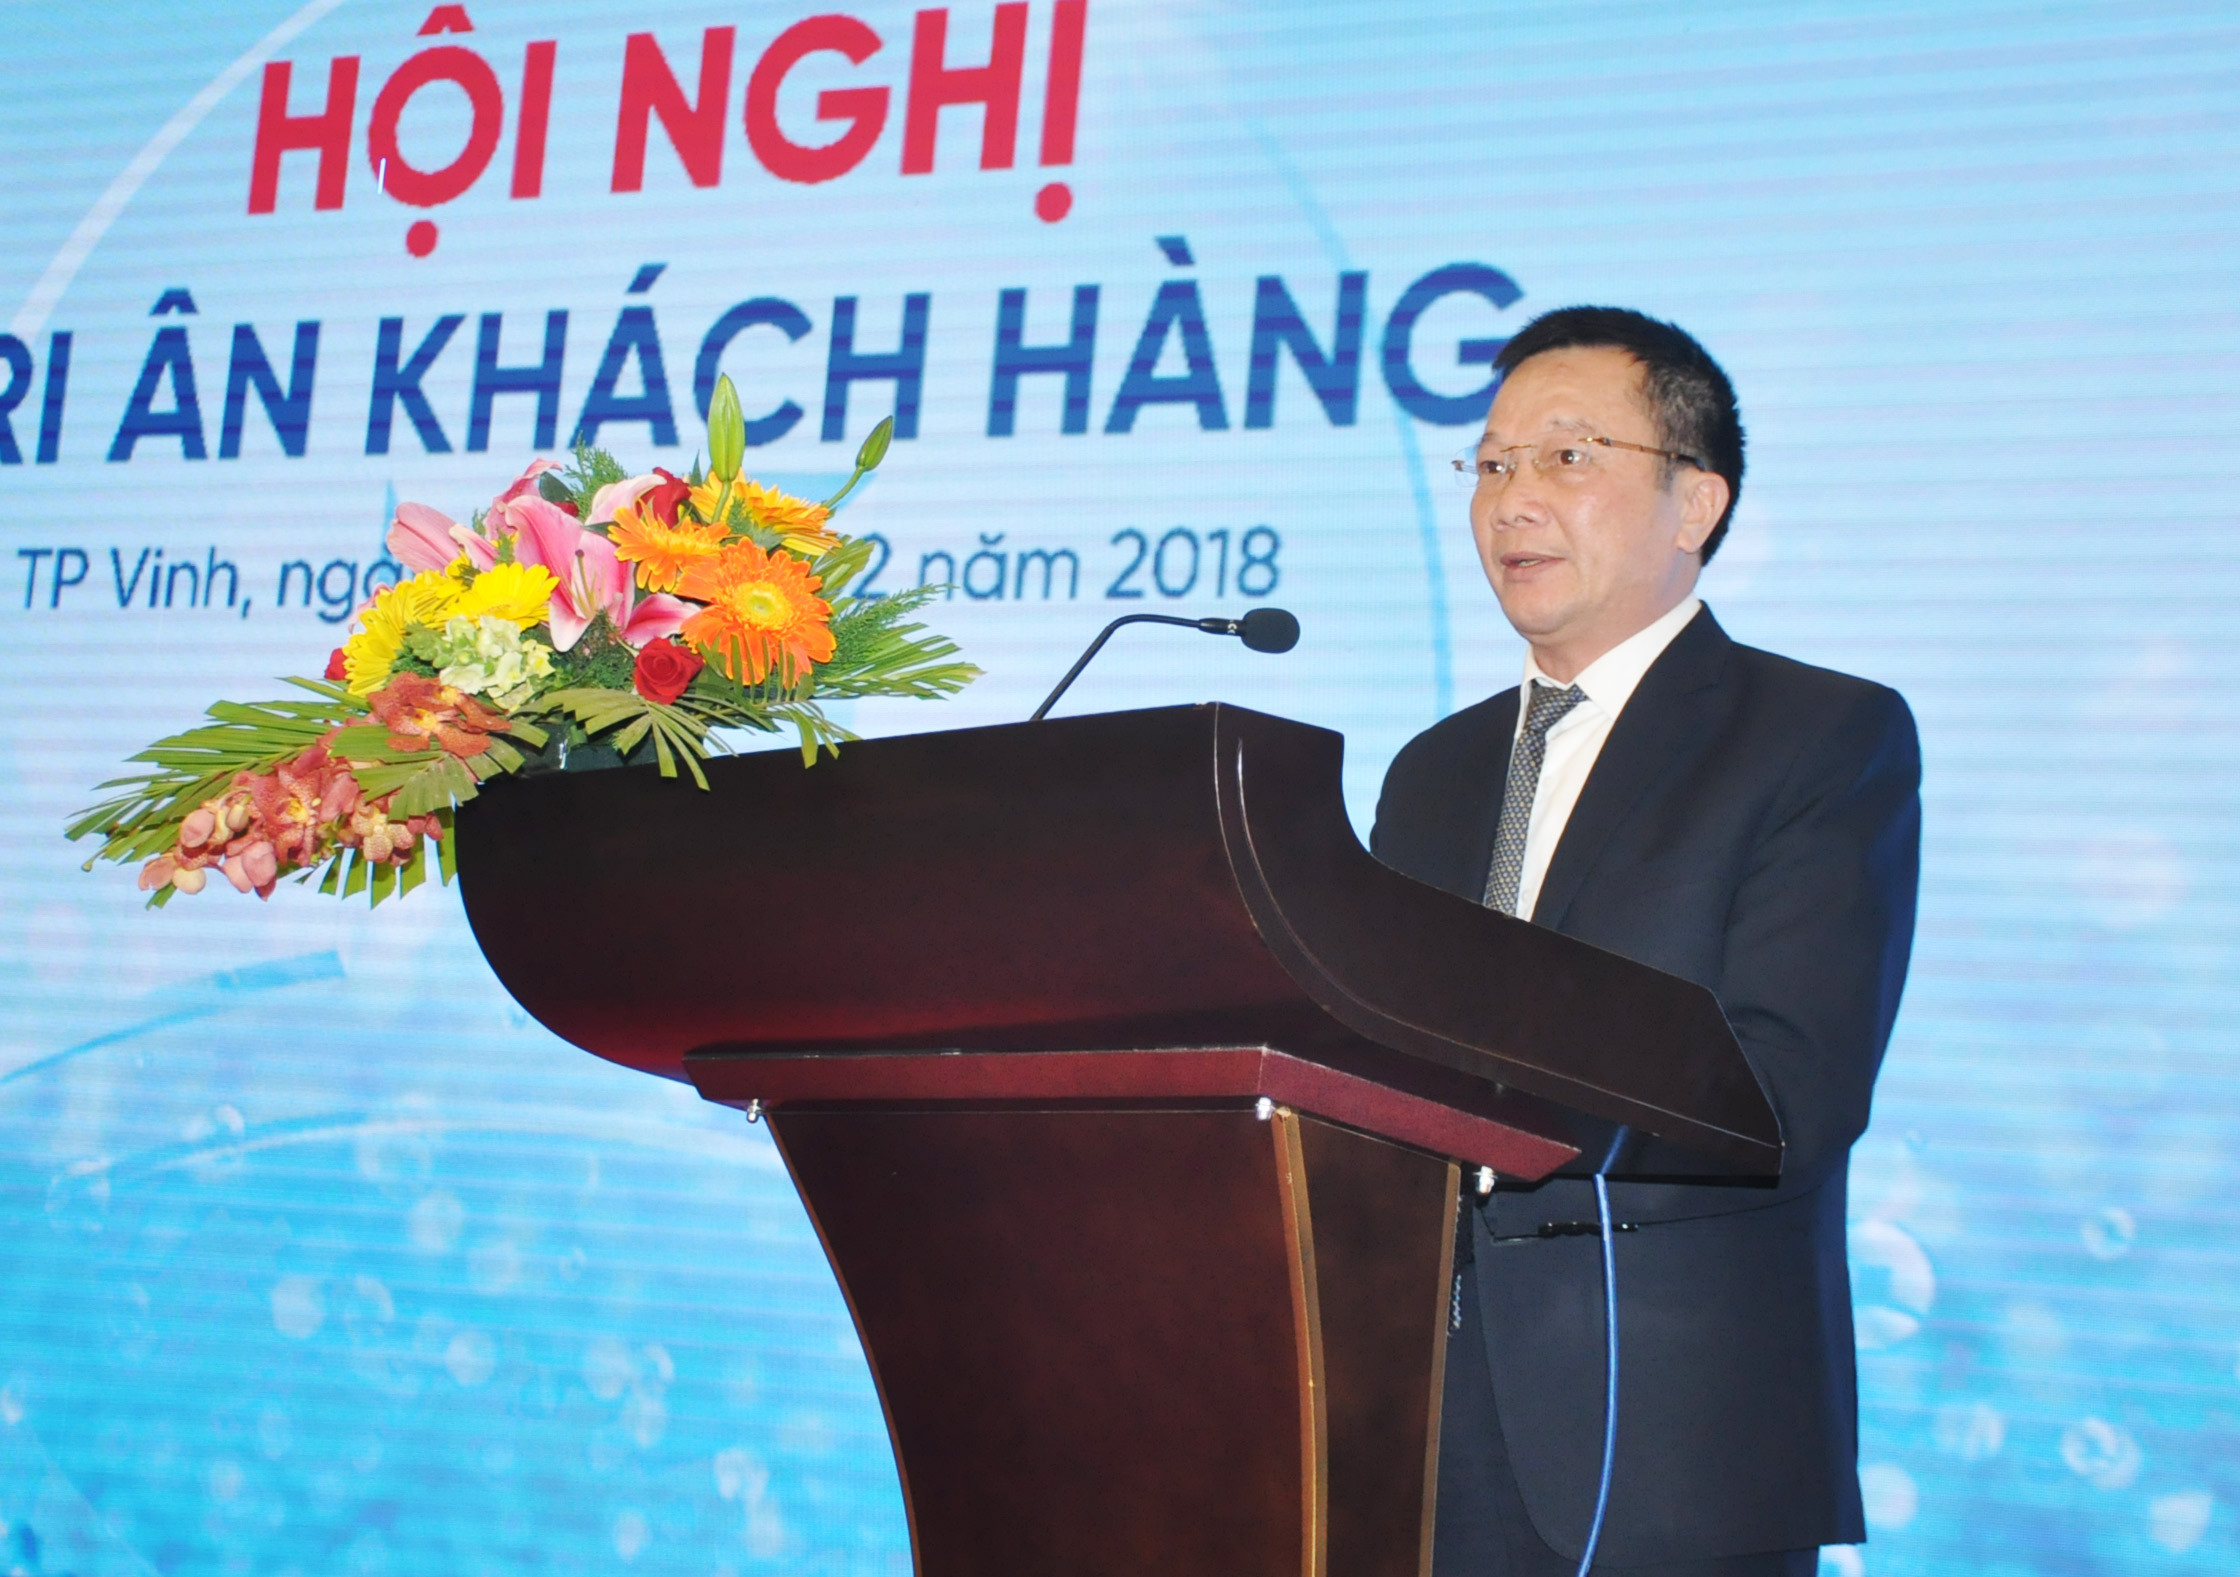 Giám đốc Ngân hàng TMCP công thương Việt Nam chi nhánh thành phố Vinh phát biểu tri ân khách hàng. Ảnh: Việt Phương